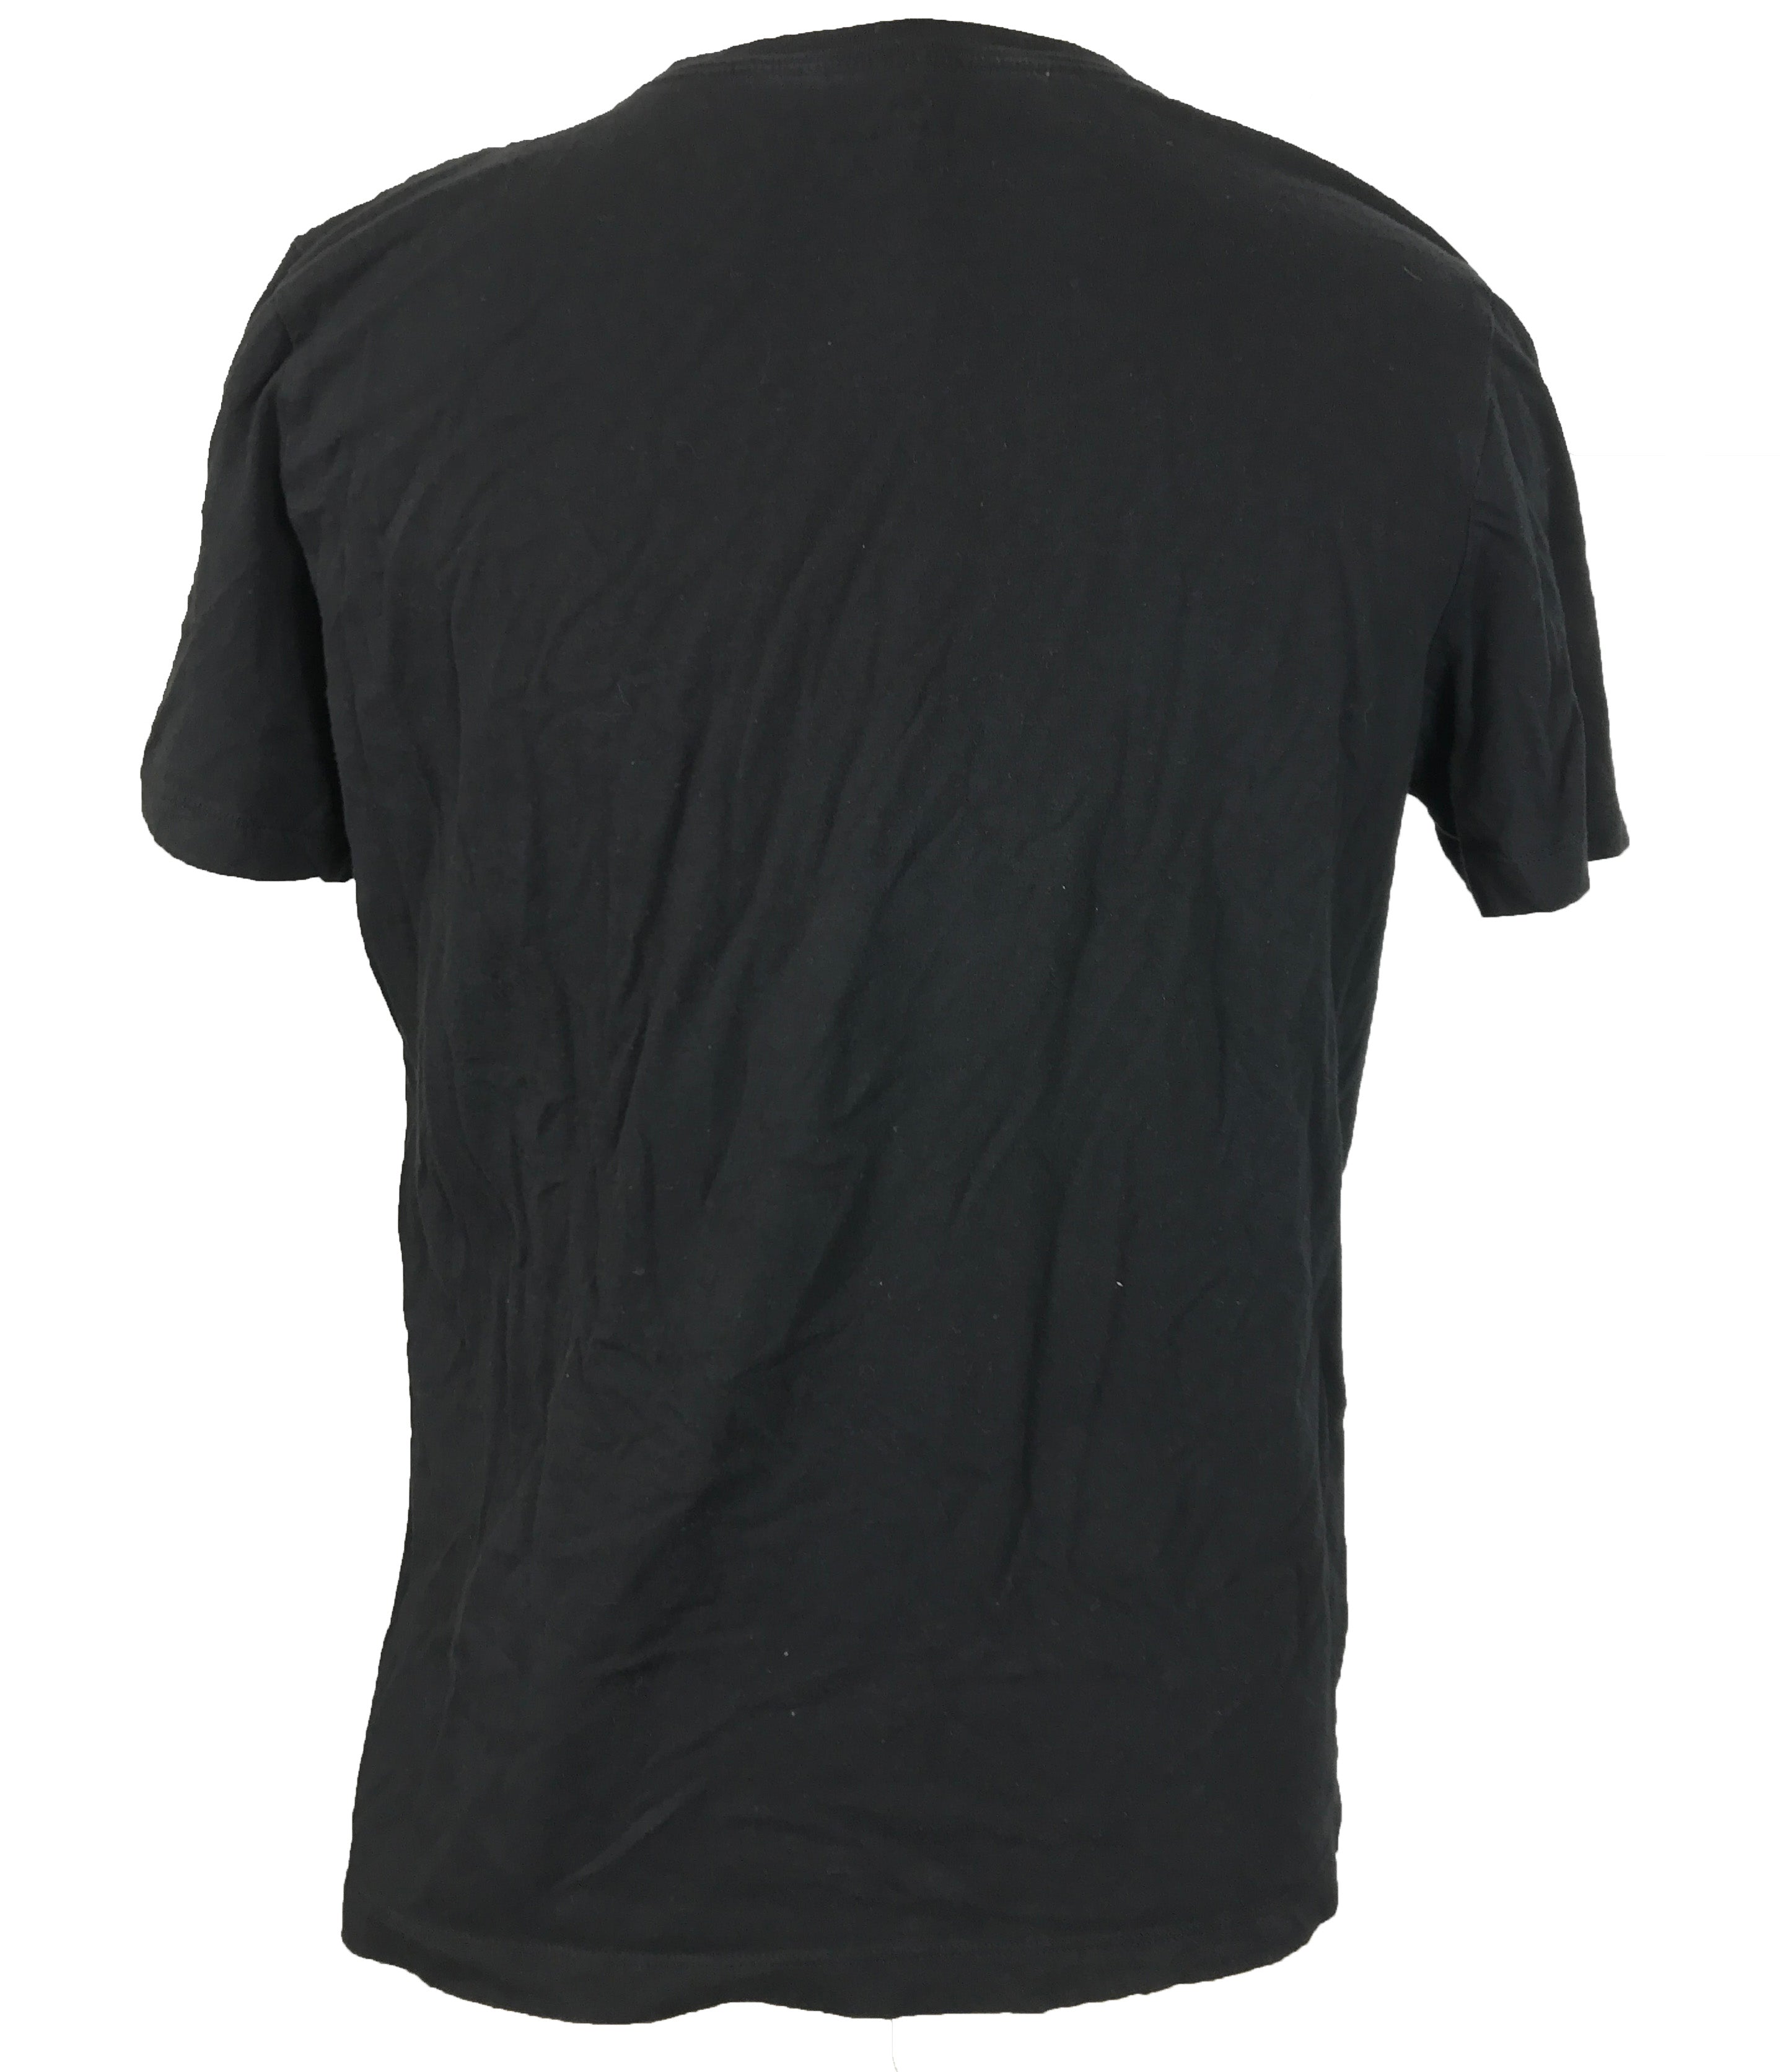 Nike Black T-Shirt Men's Size L